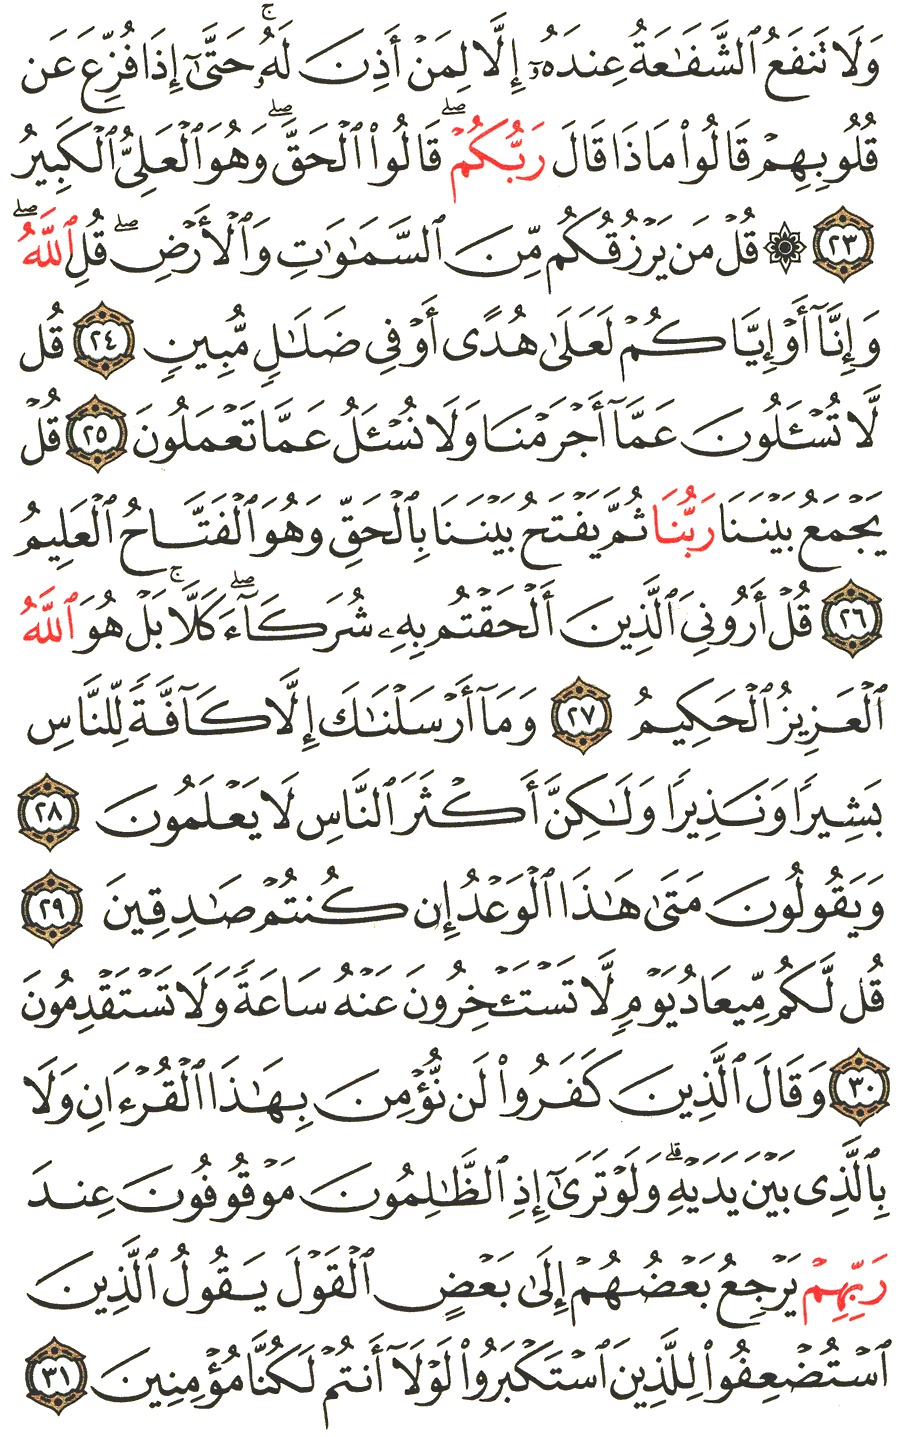 الصفحة رقم 431 من القرآن الكريم مكتوبة من المصحف